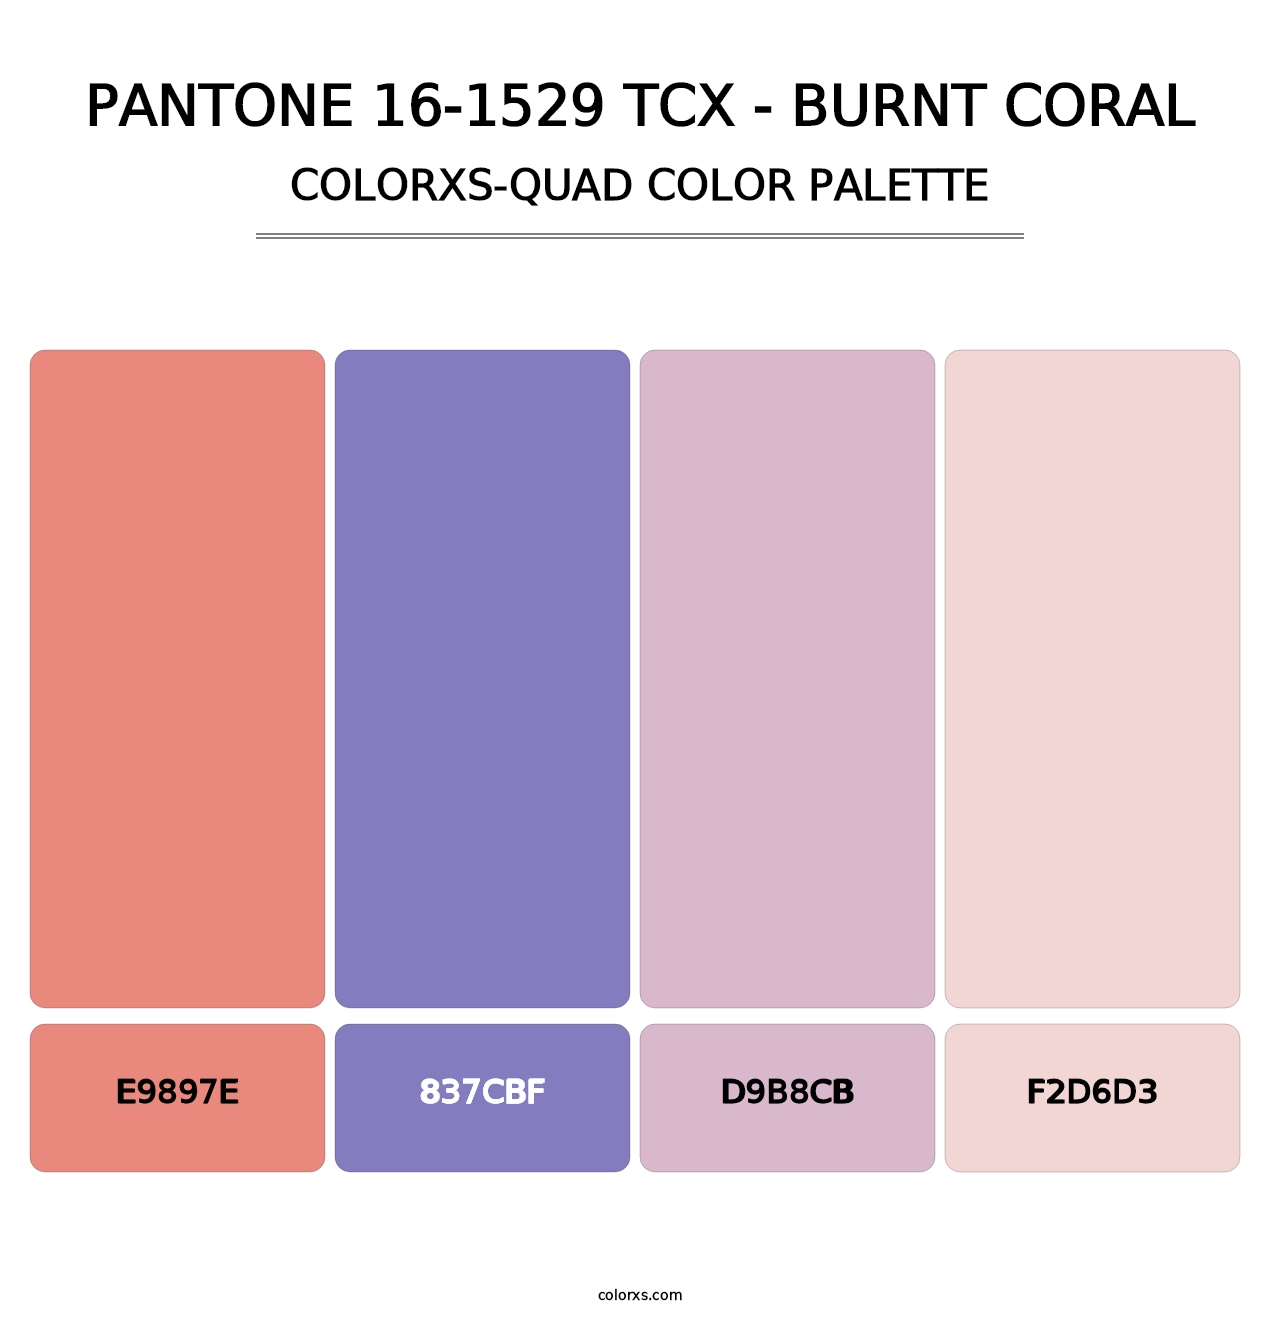 PANTONE 16-1529 TCX - Burnt Coral - Colorxs Quad Palette